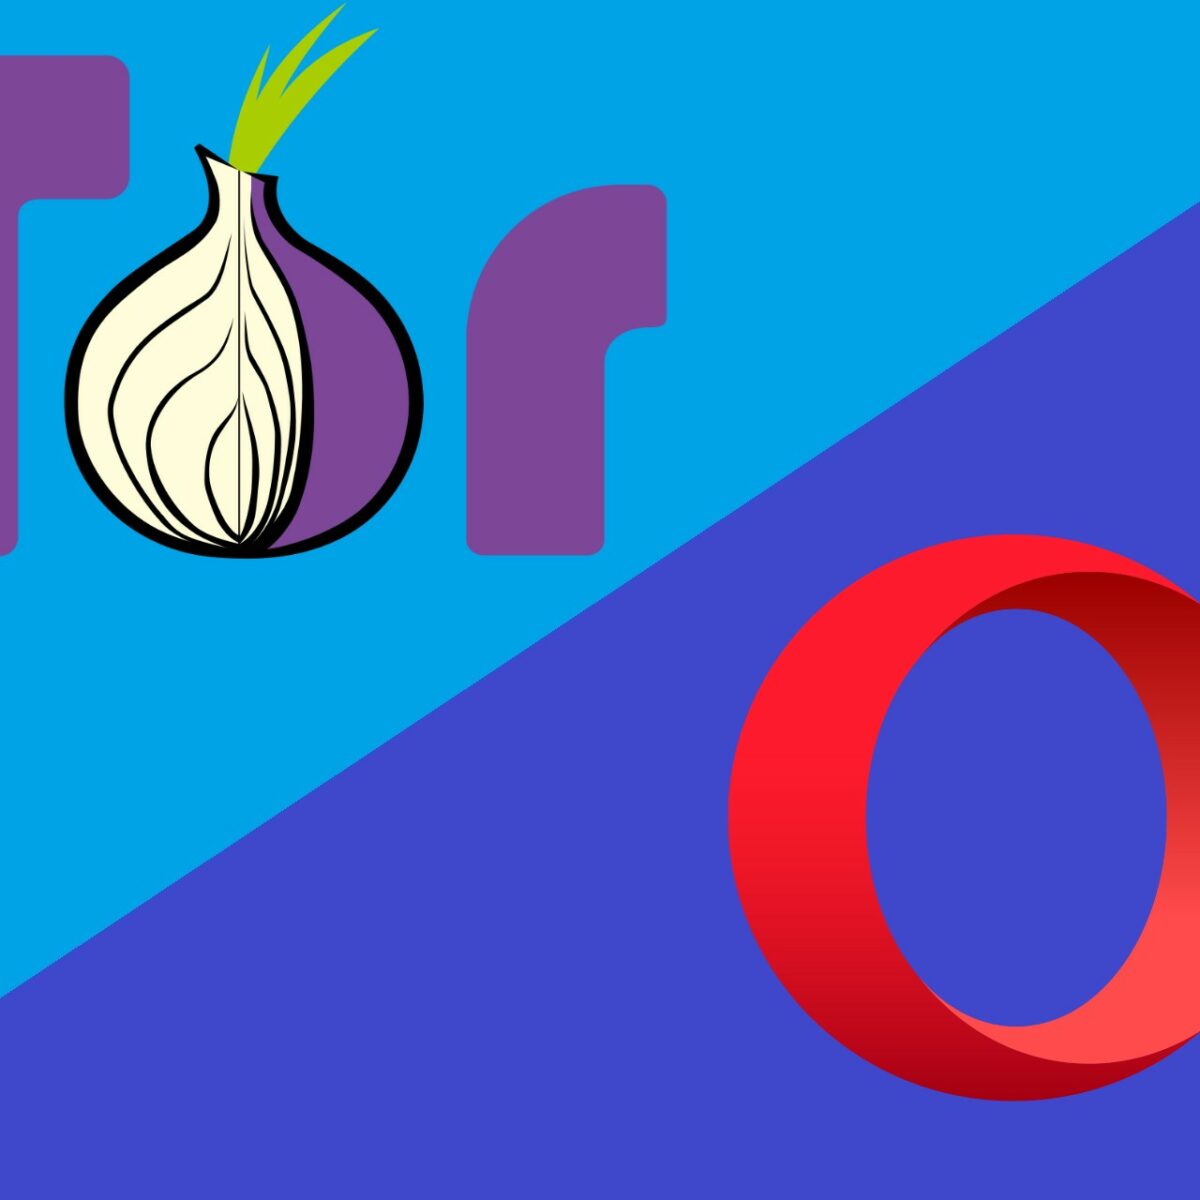 Tor with opera browser gydra что с тор браузером не работает два дня 2017 hyrda